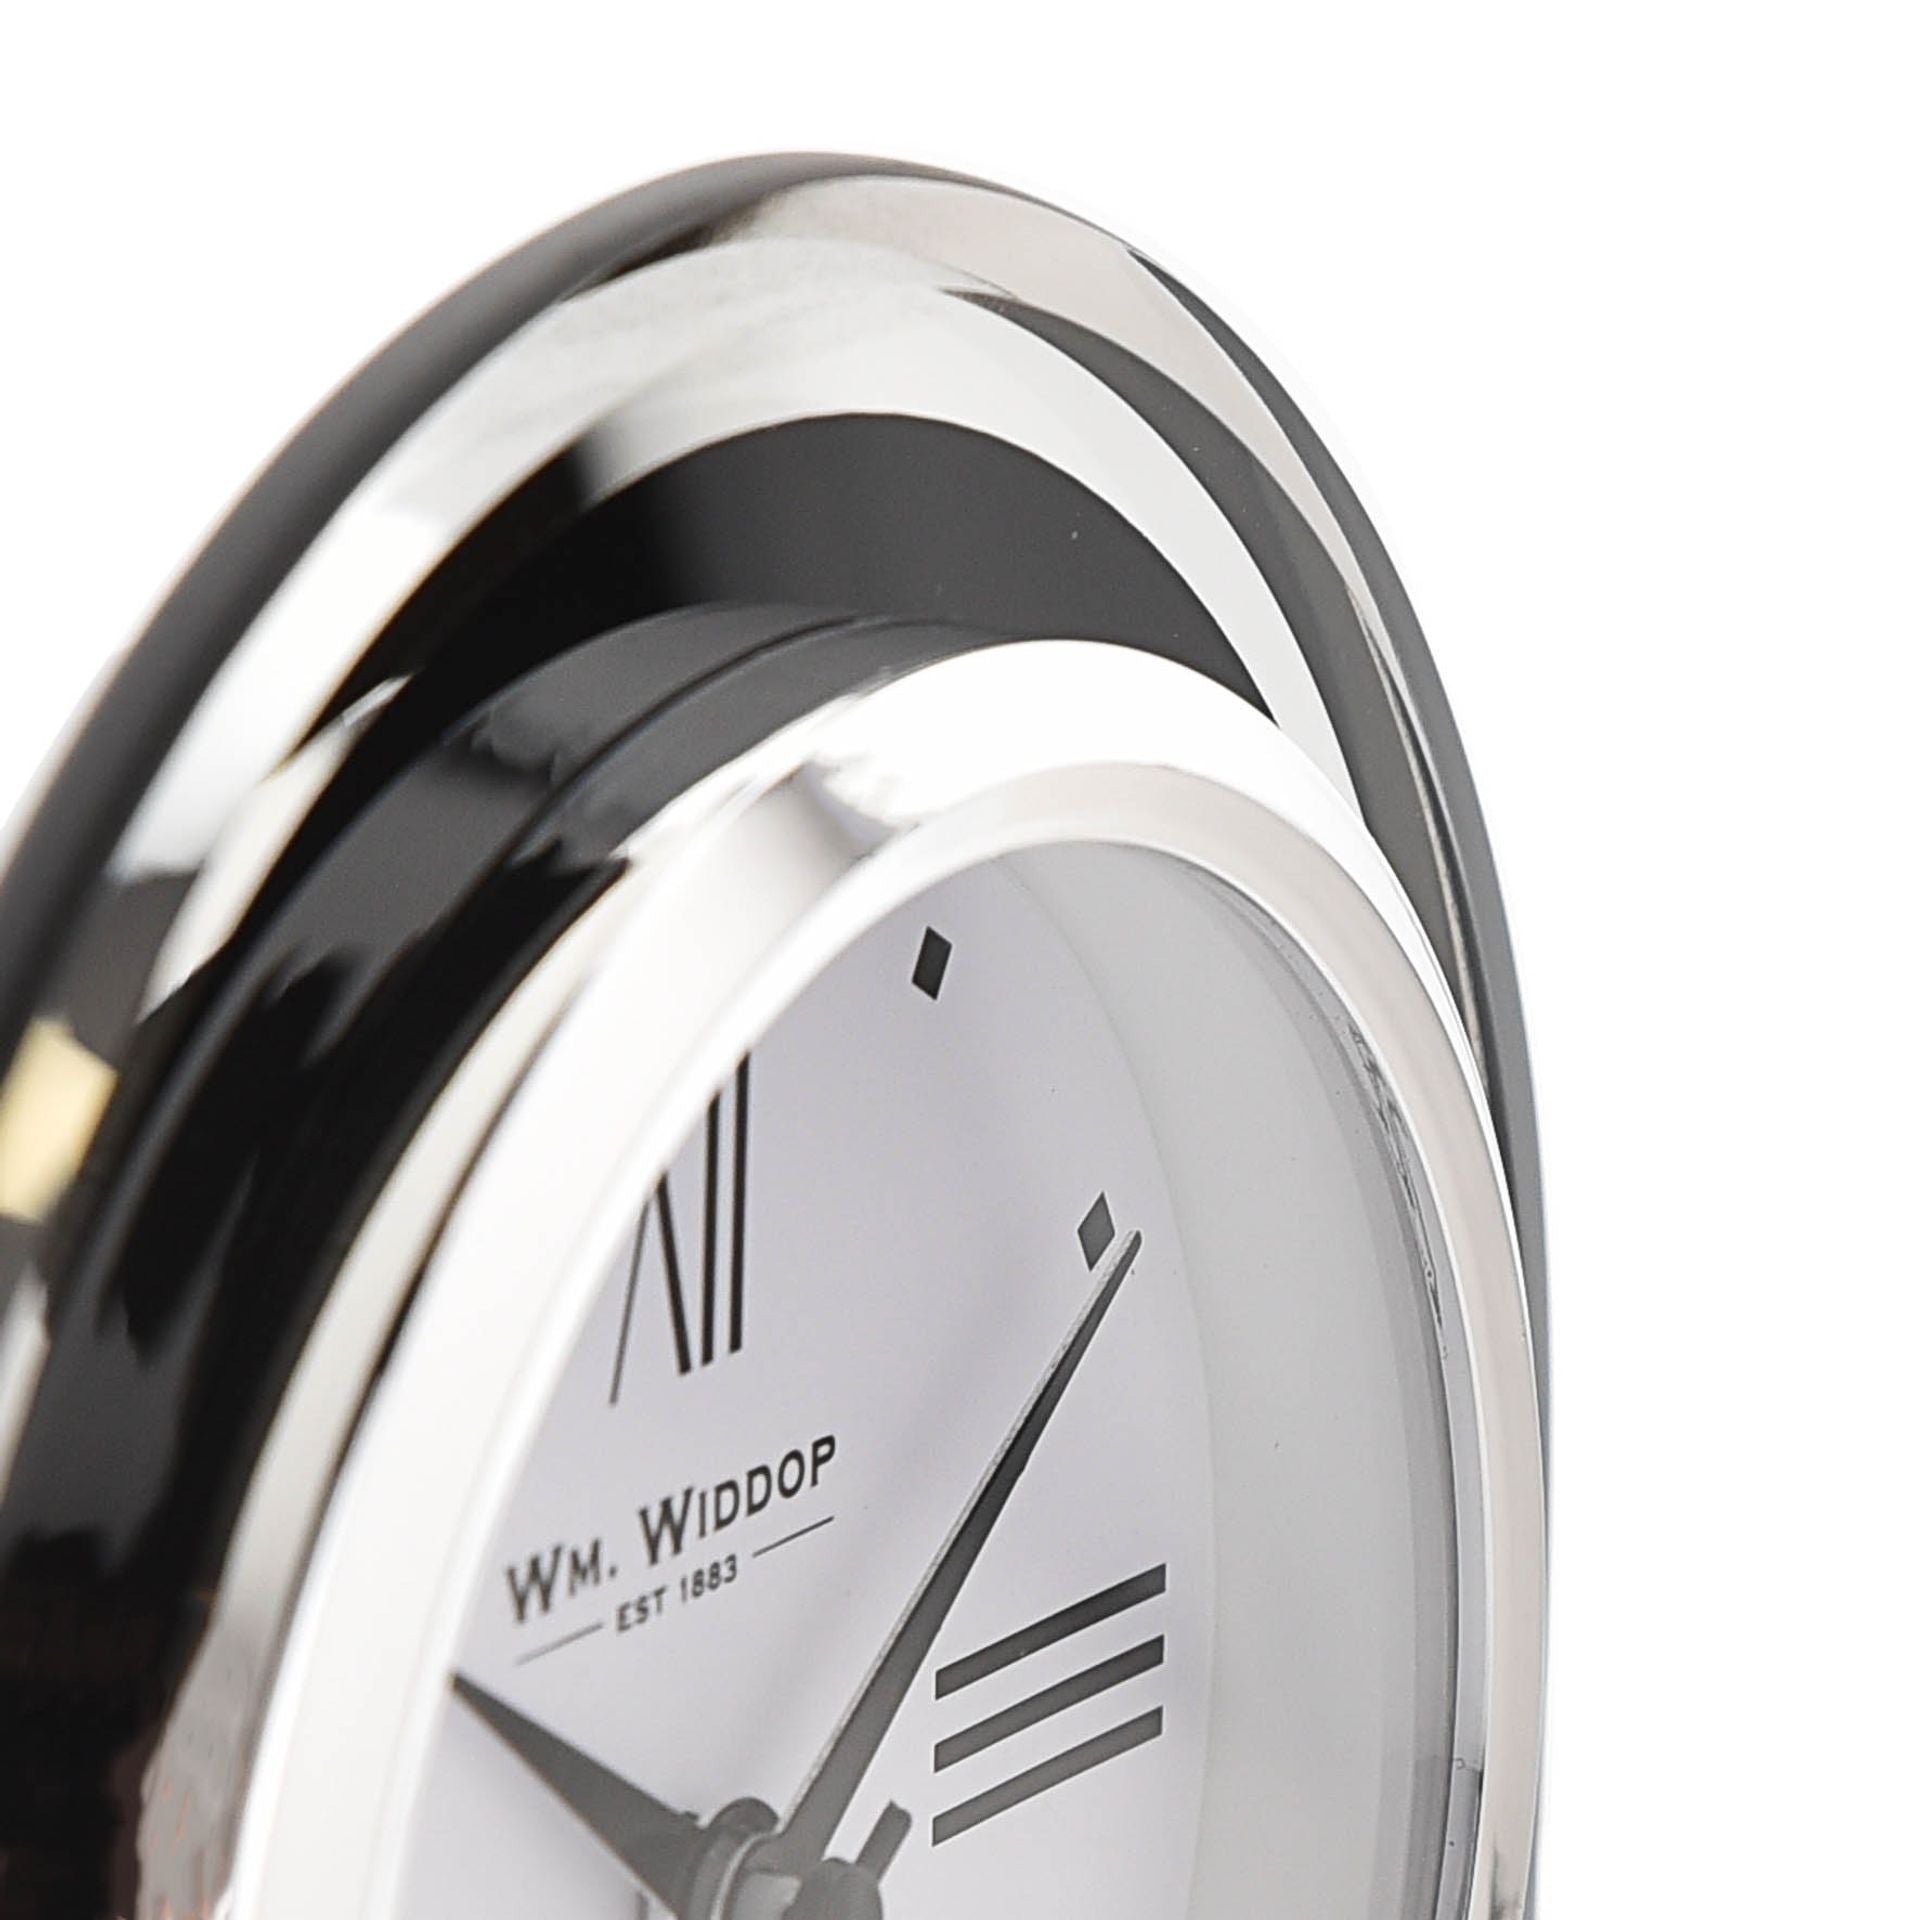 WM. Widdop Black & Clear Arched Mantel Clock